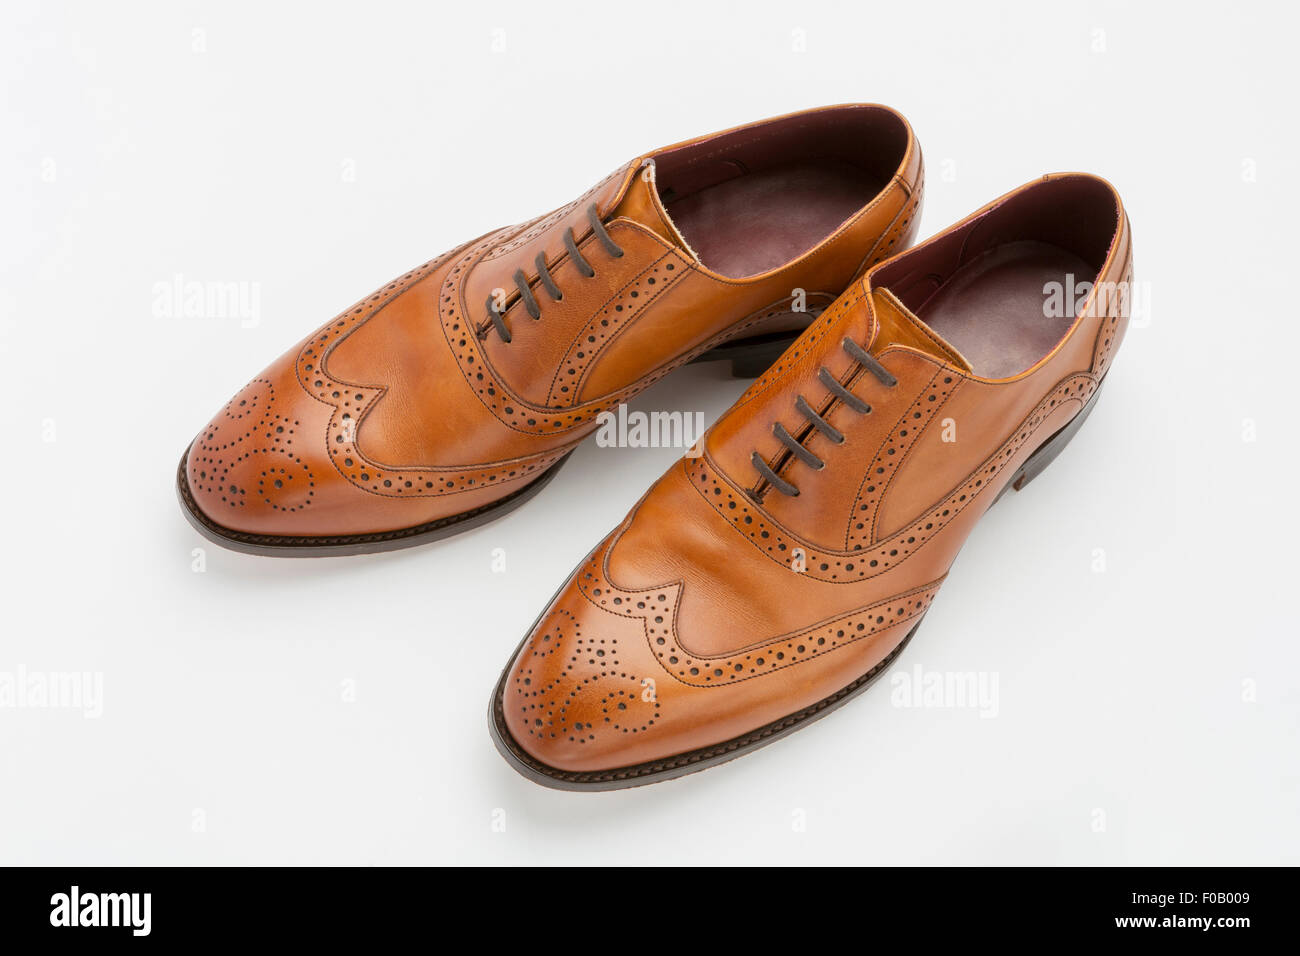 English shoes immagini e fotografie stock ad alta risoluzione - Alamy